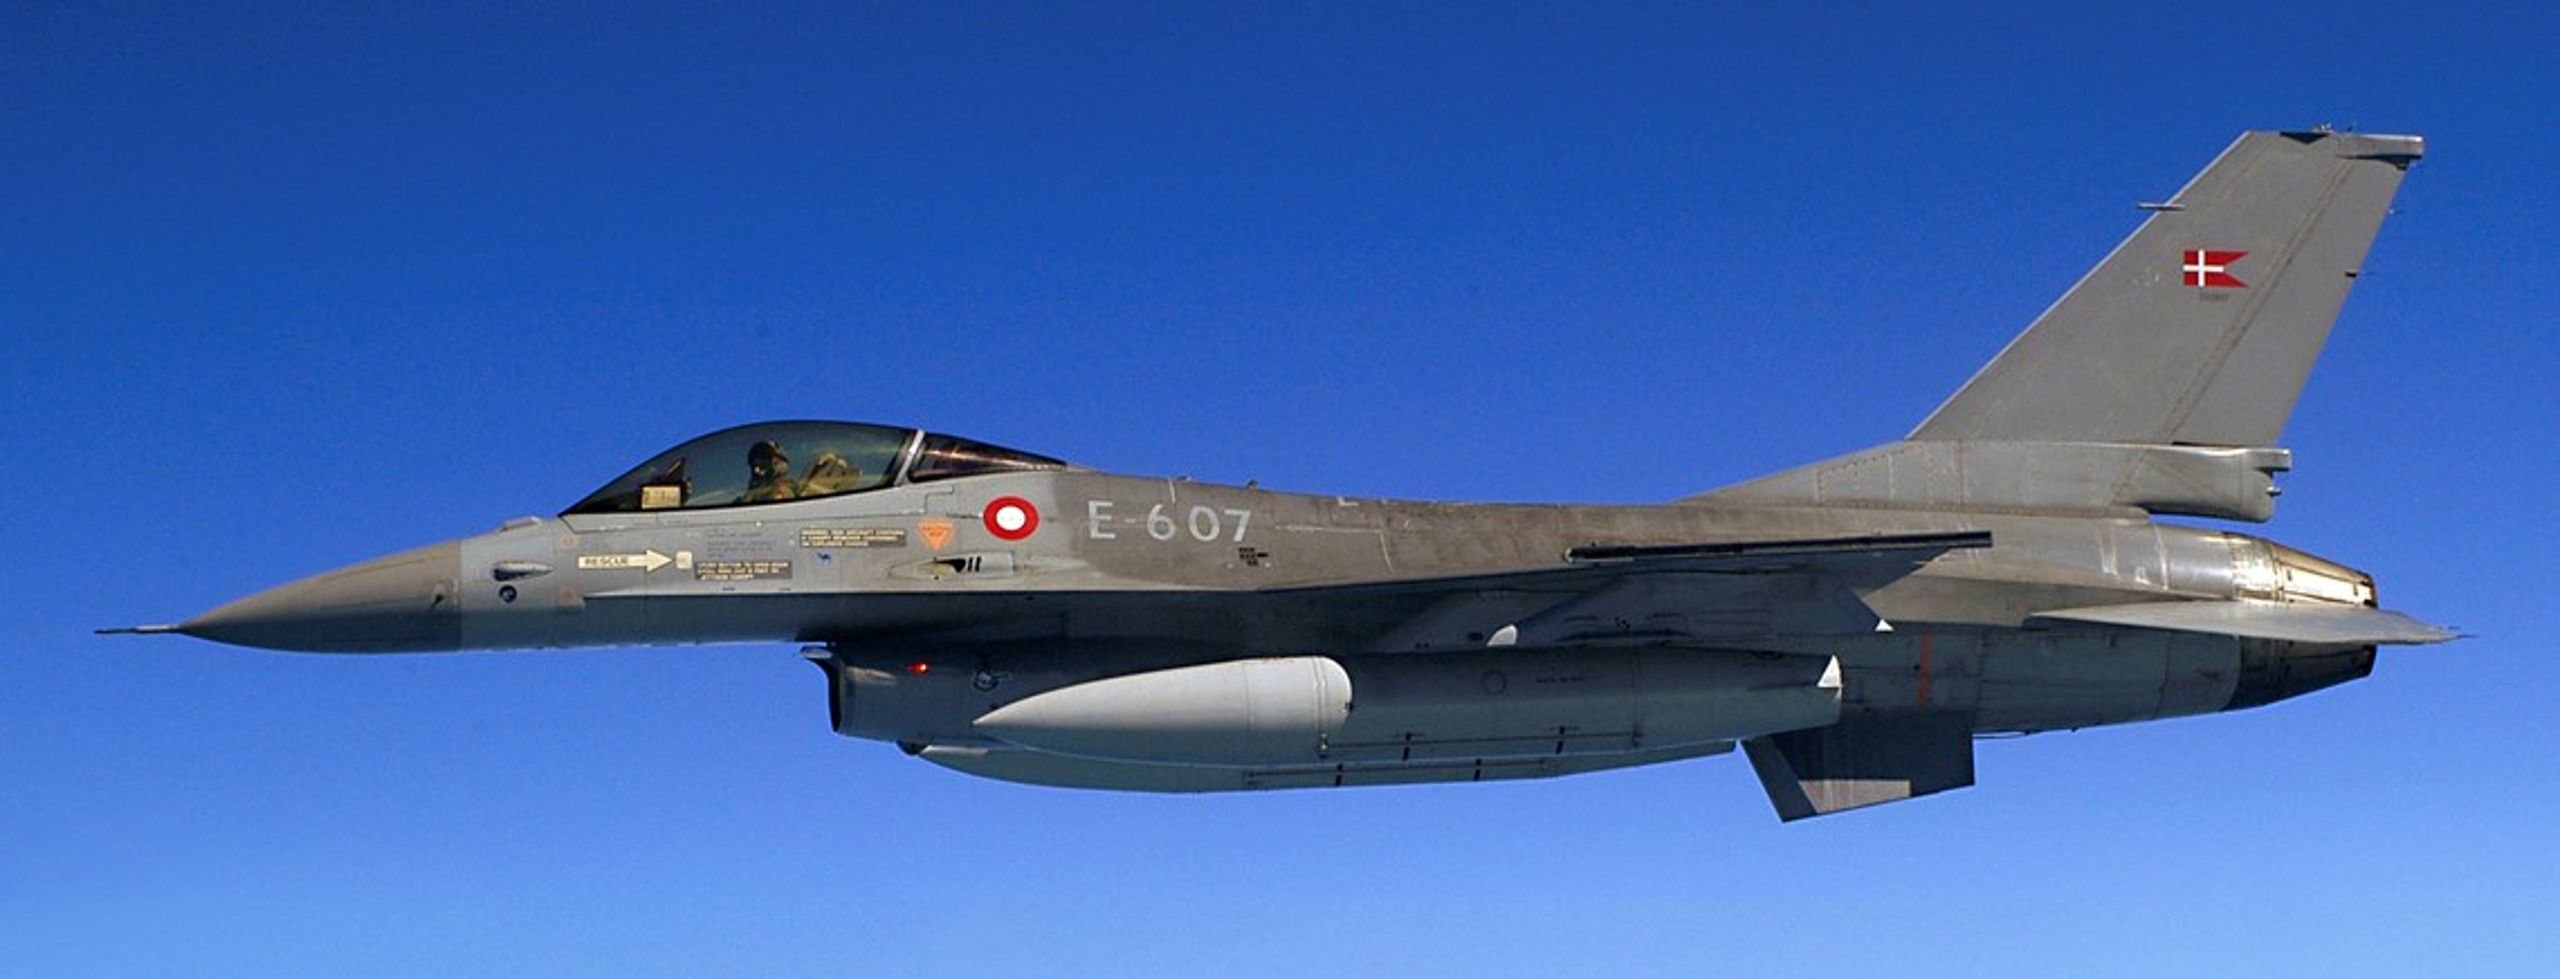 Danmark sender syv F-16 fly til Irak i kampen mod Islamisk Stat.&nbsp;